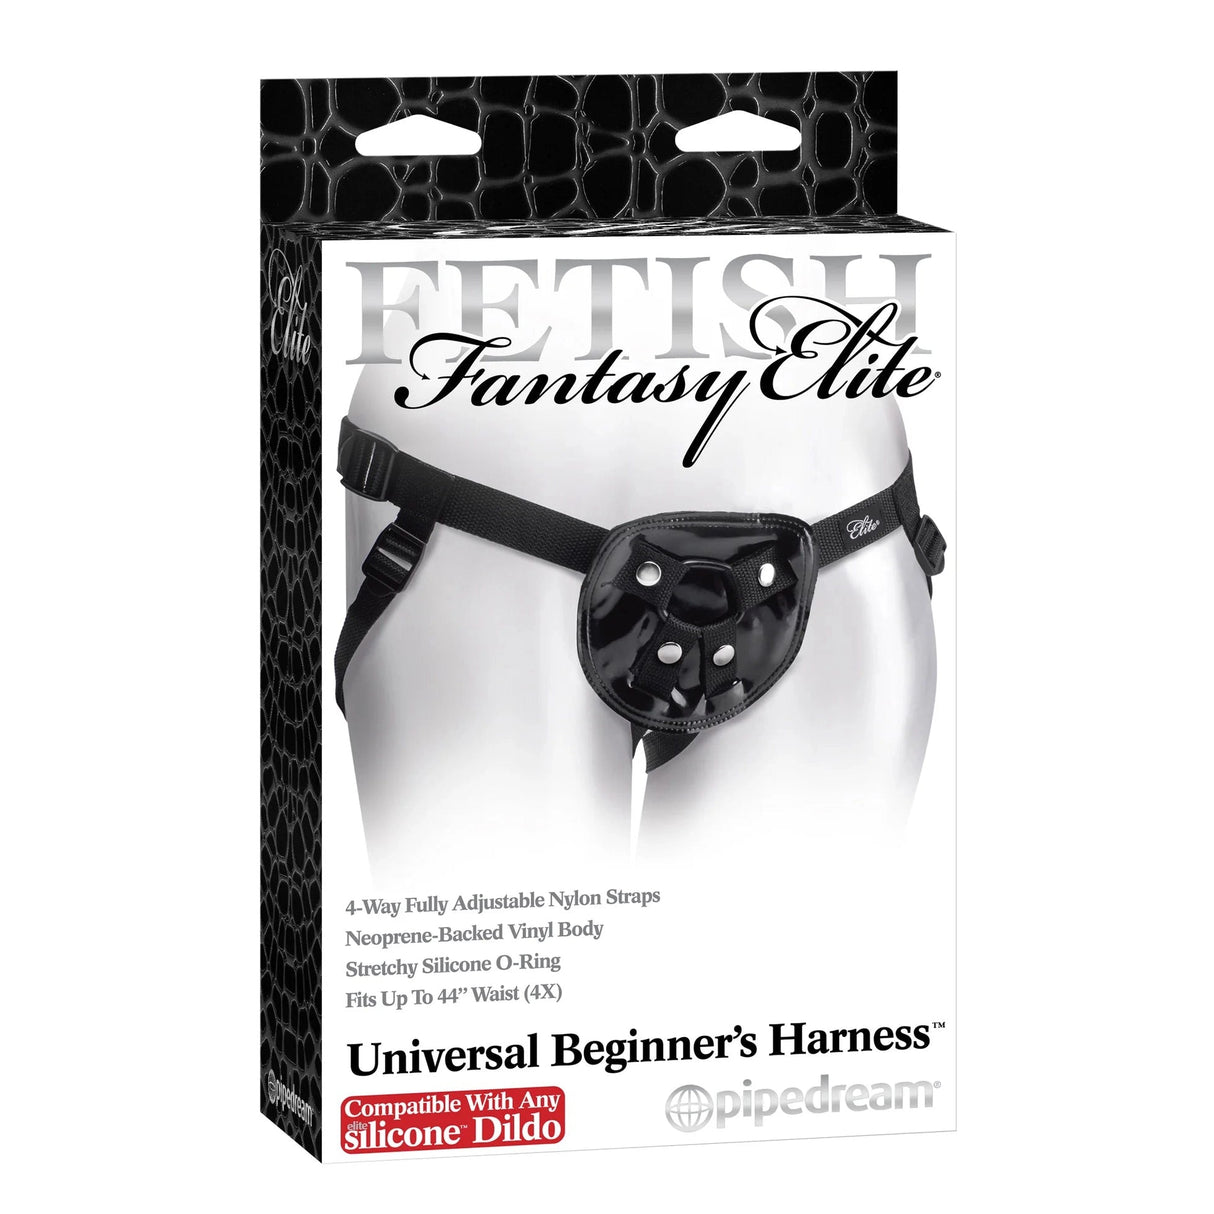 Fetish Fantasy Elite Universal Beginner's Harness